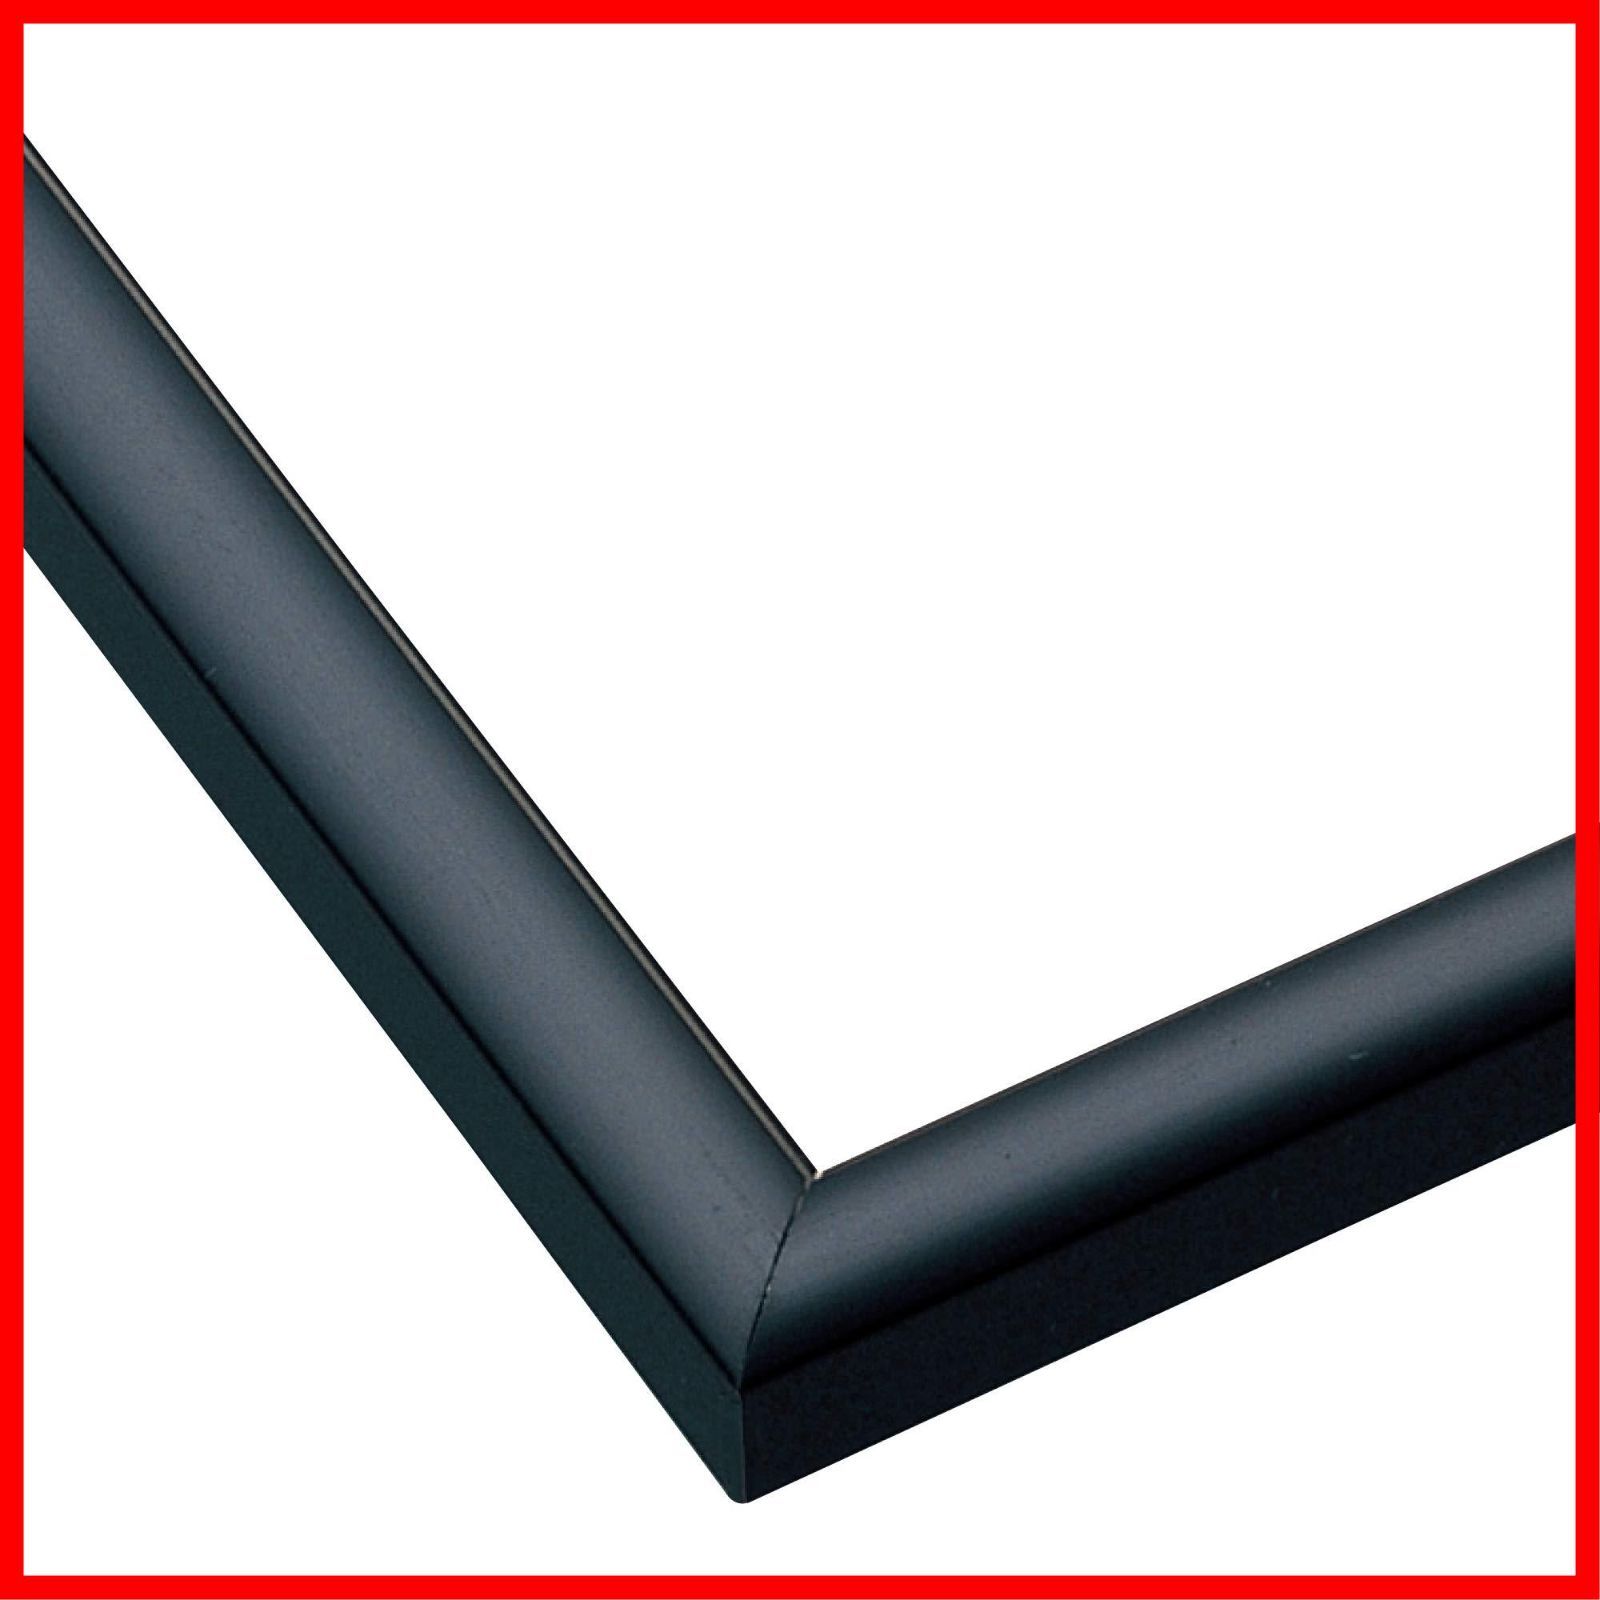 超高品質で人気の エポック社 アルミ製パズルフレーム パネルマックス ブラック 38x53cm パネルNo.5-B UVカット仕様 パズル Frame  額縁